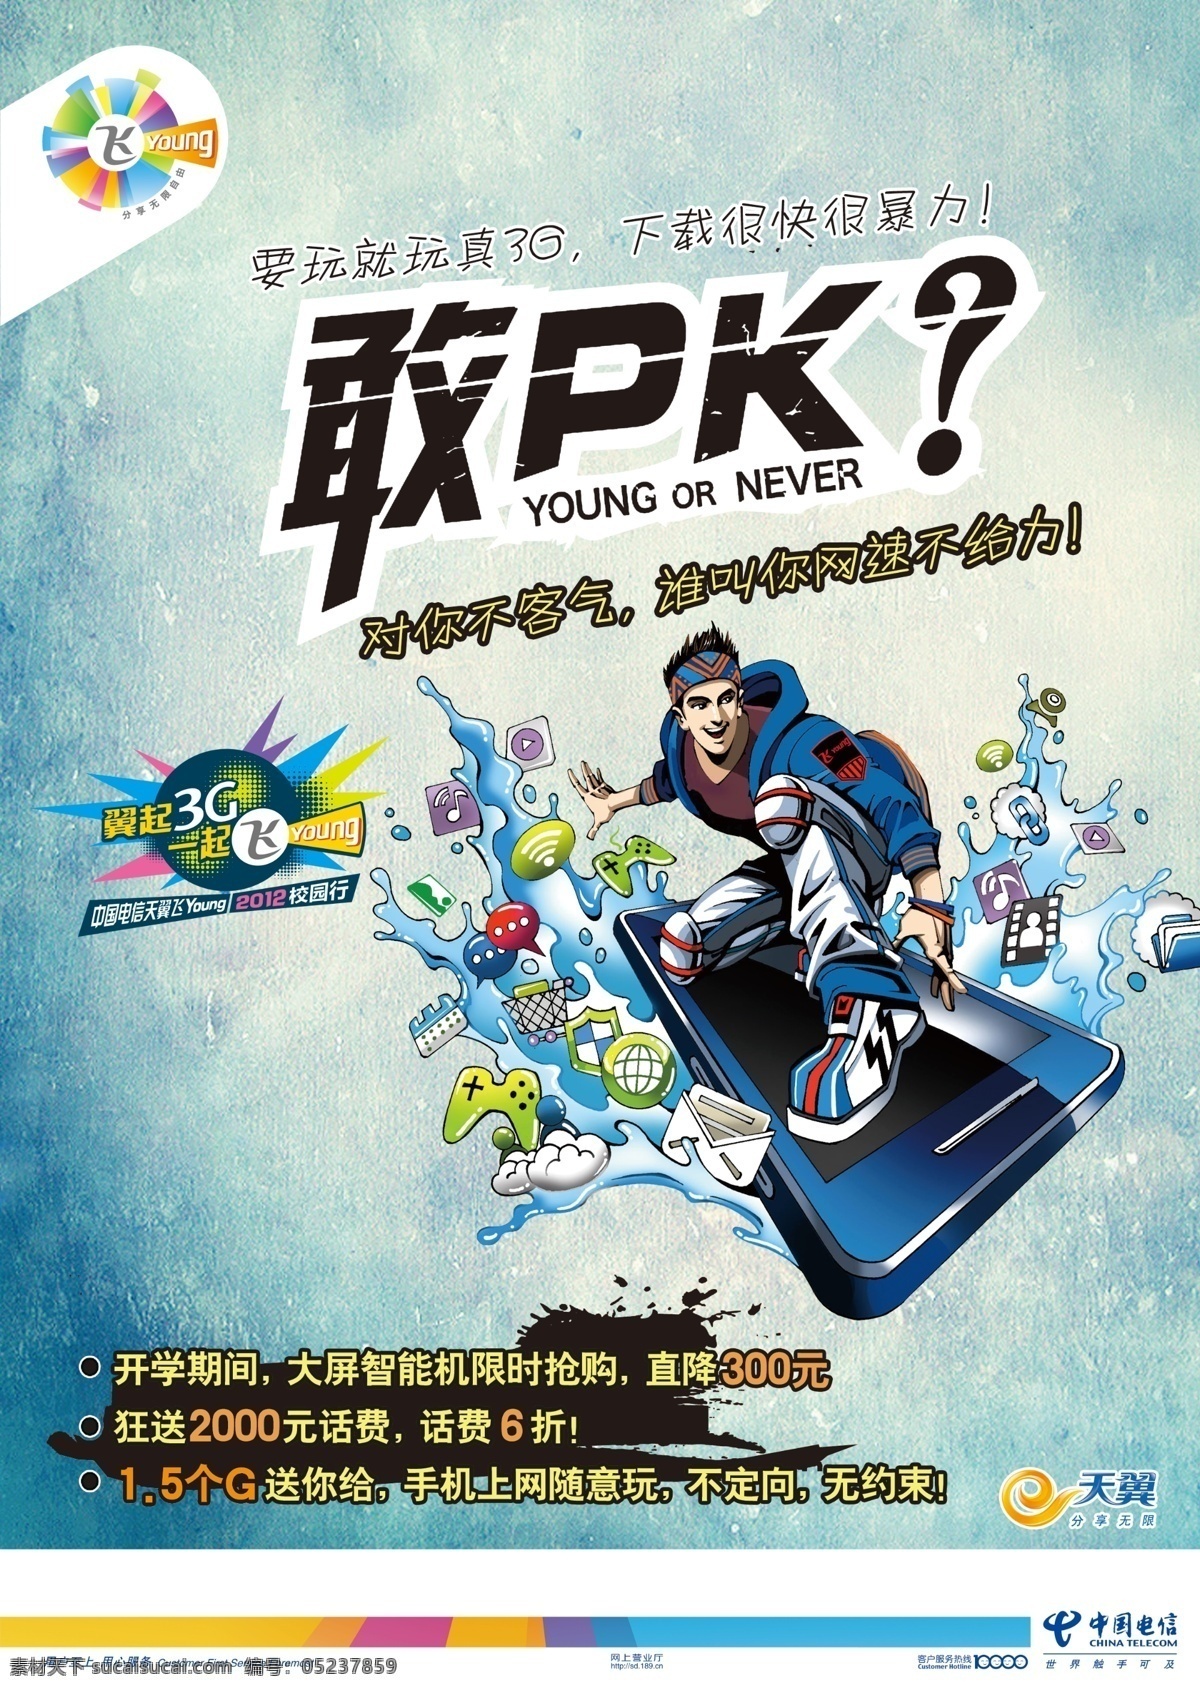 中国电信 模版下载 天翼 飞young 卡通冲浪 手机 敢pk 广告设计模板 源文件 卡通设计